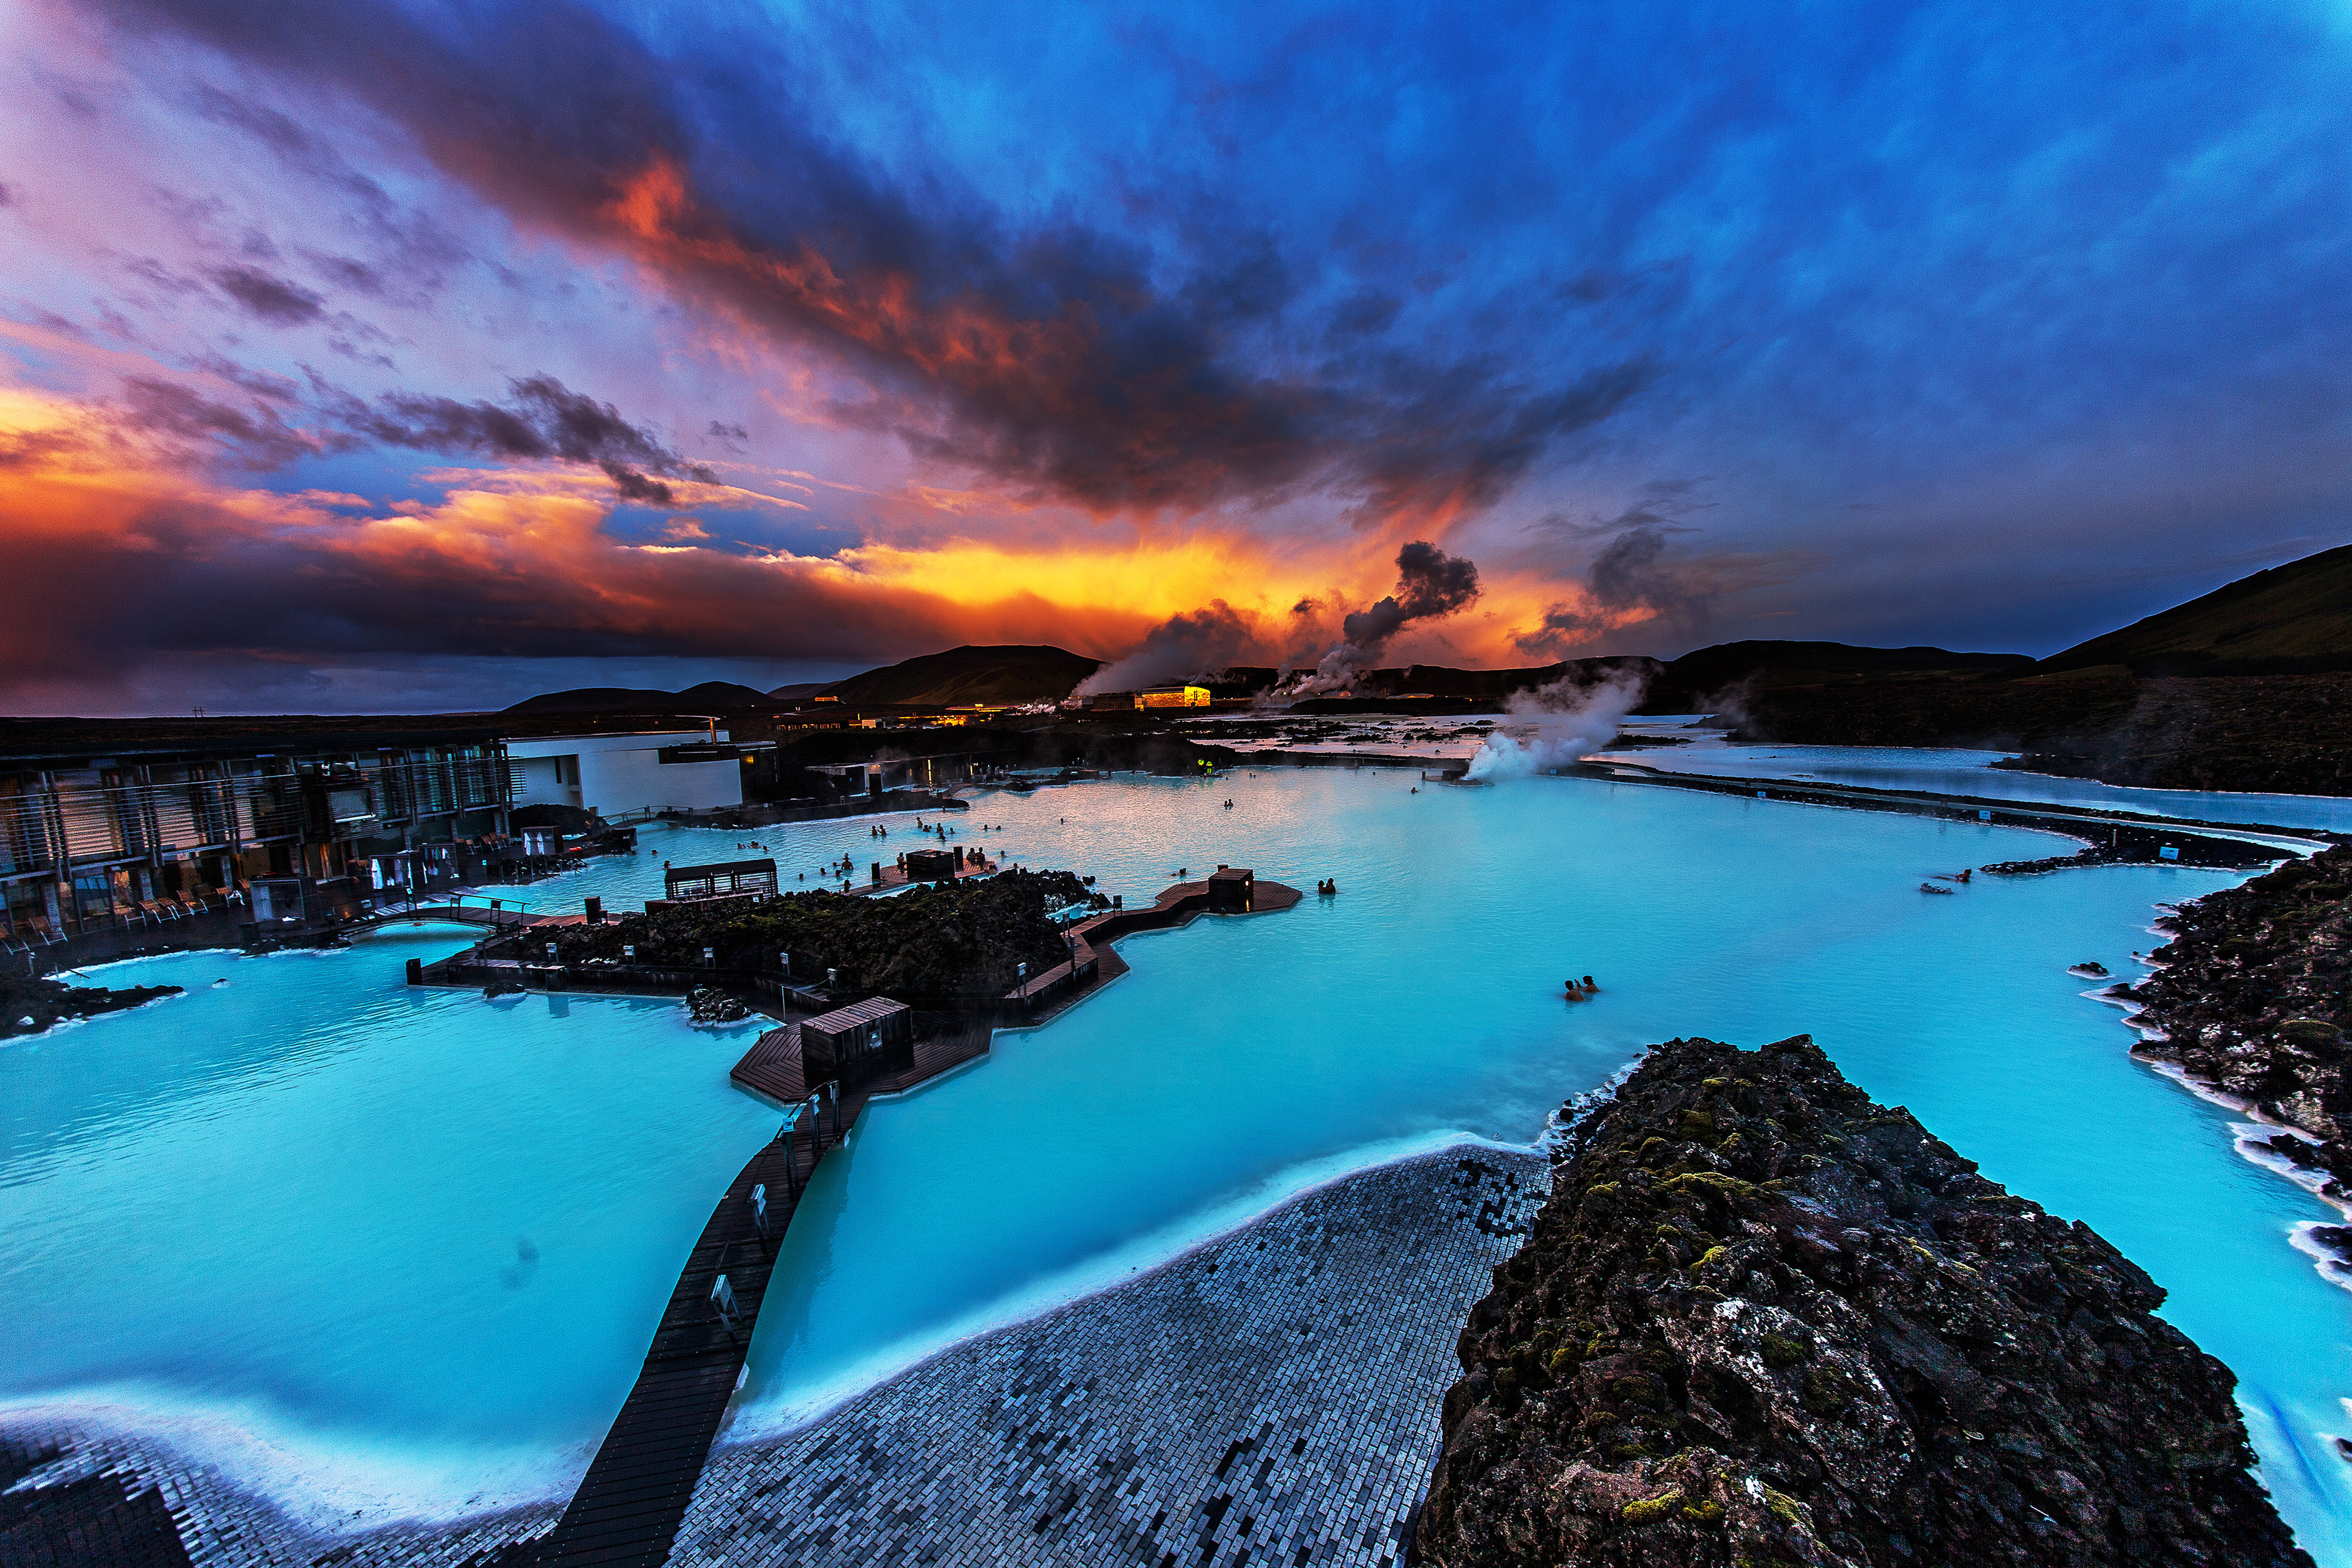 Голубая лагуна. Голубая Лагуна - геотермальный бассейн в Исландии. Исландия Рейкьявик голубая Лагуна. Голубая Лагуна (Blue Lagoon), Исландия. Исландия достопримечательности голубая Лагуна.